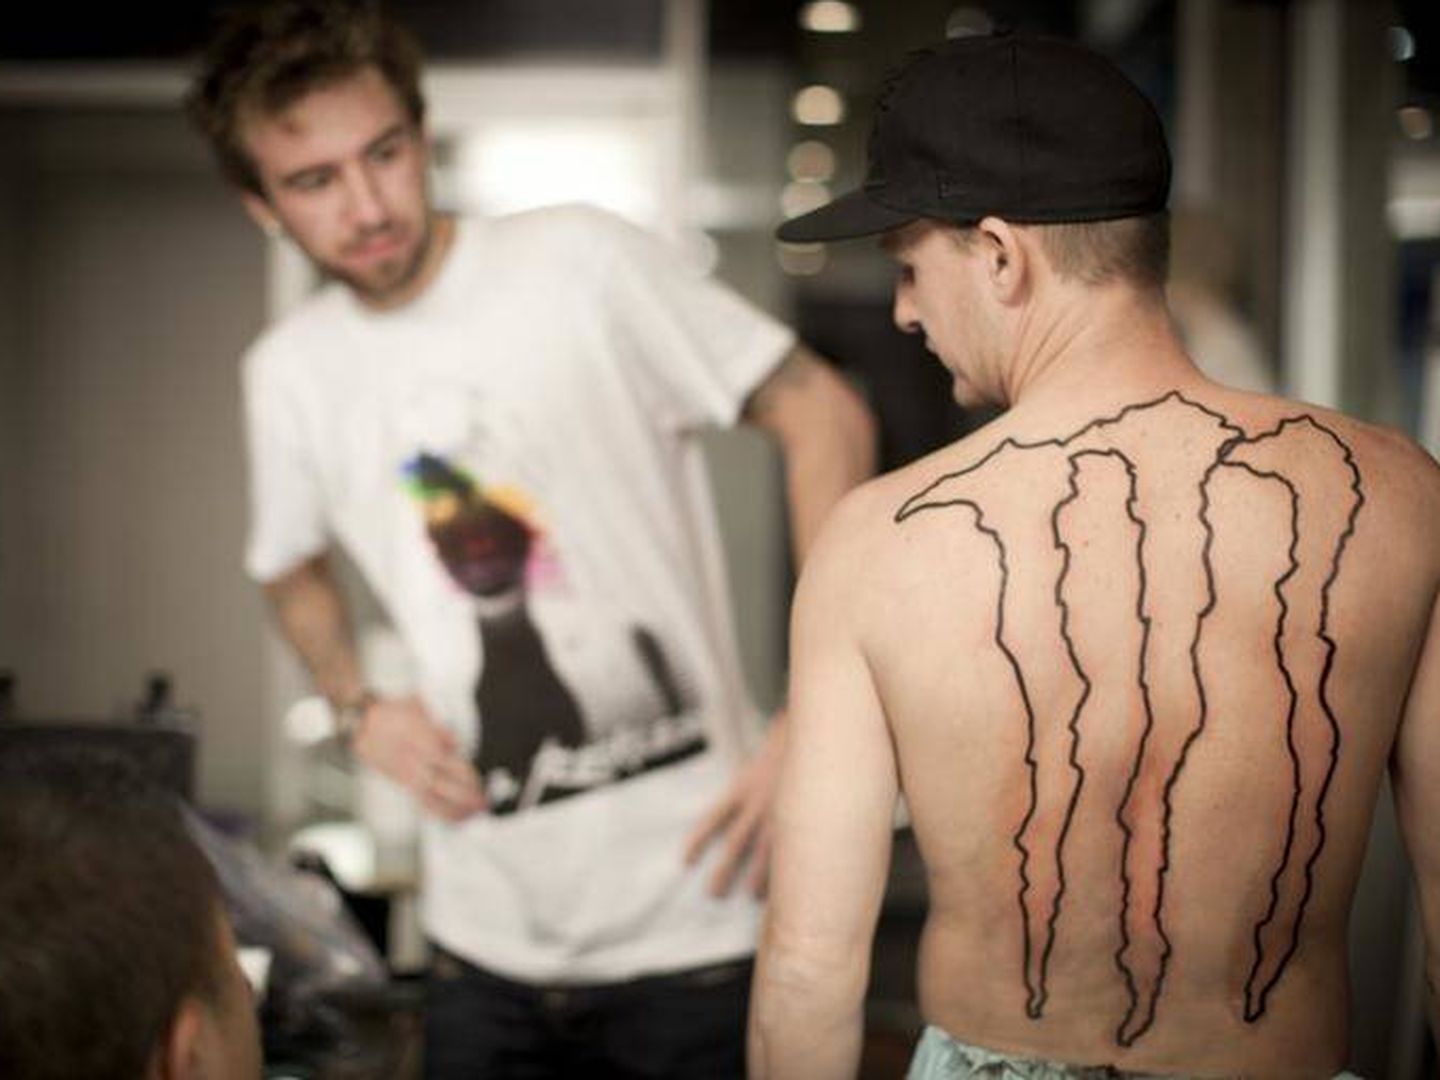 Monster ha sabido aprovechar la iniciativa de su público de tatuarse el logo.